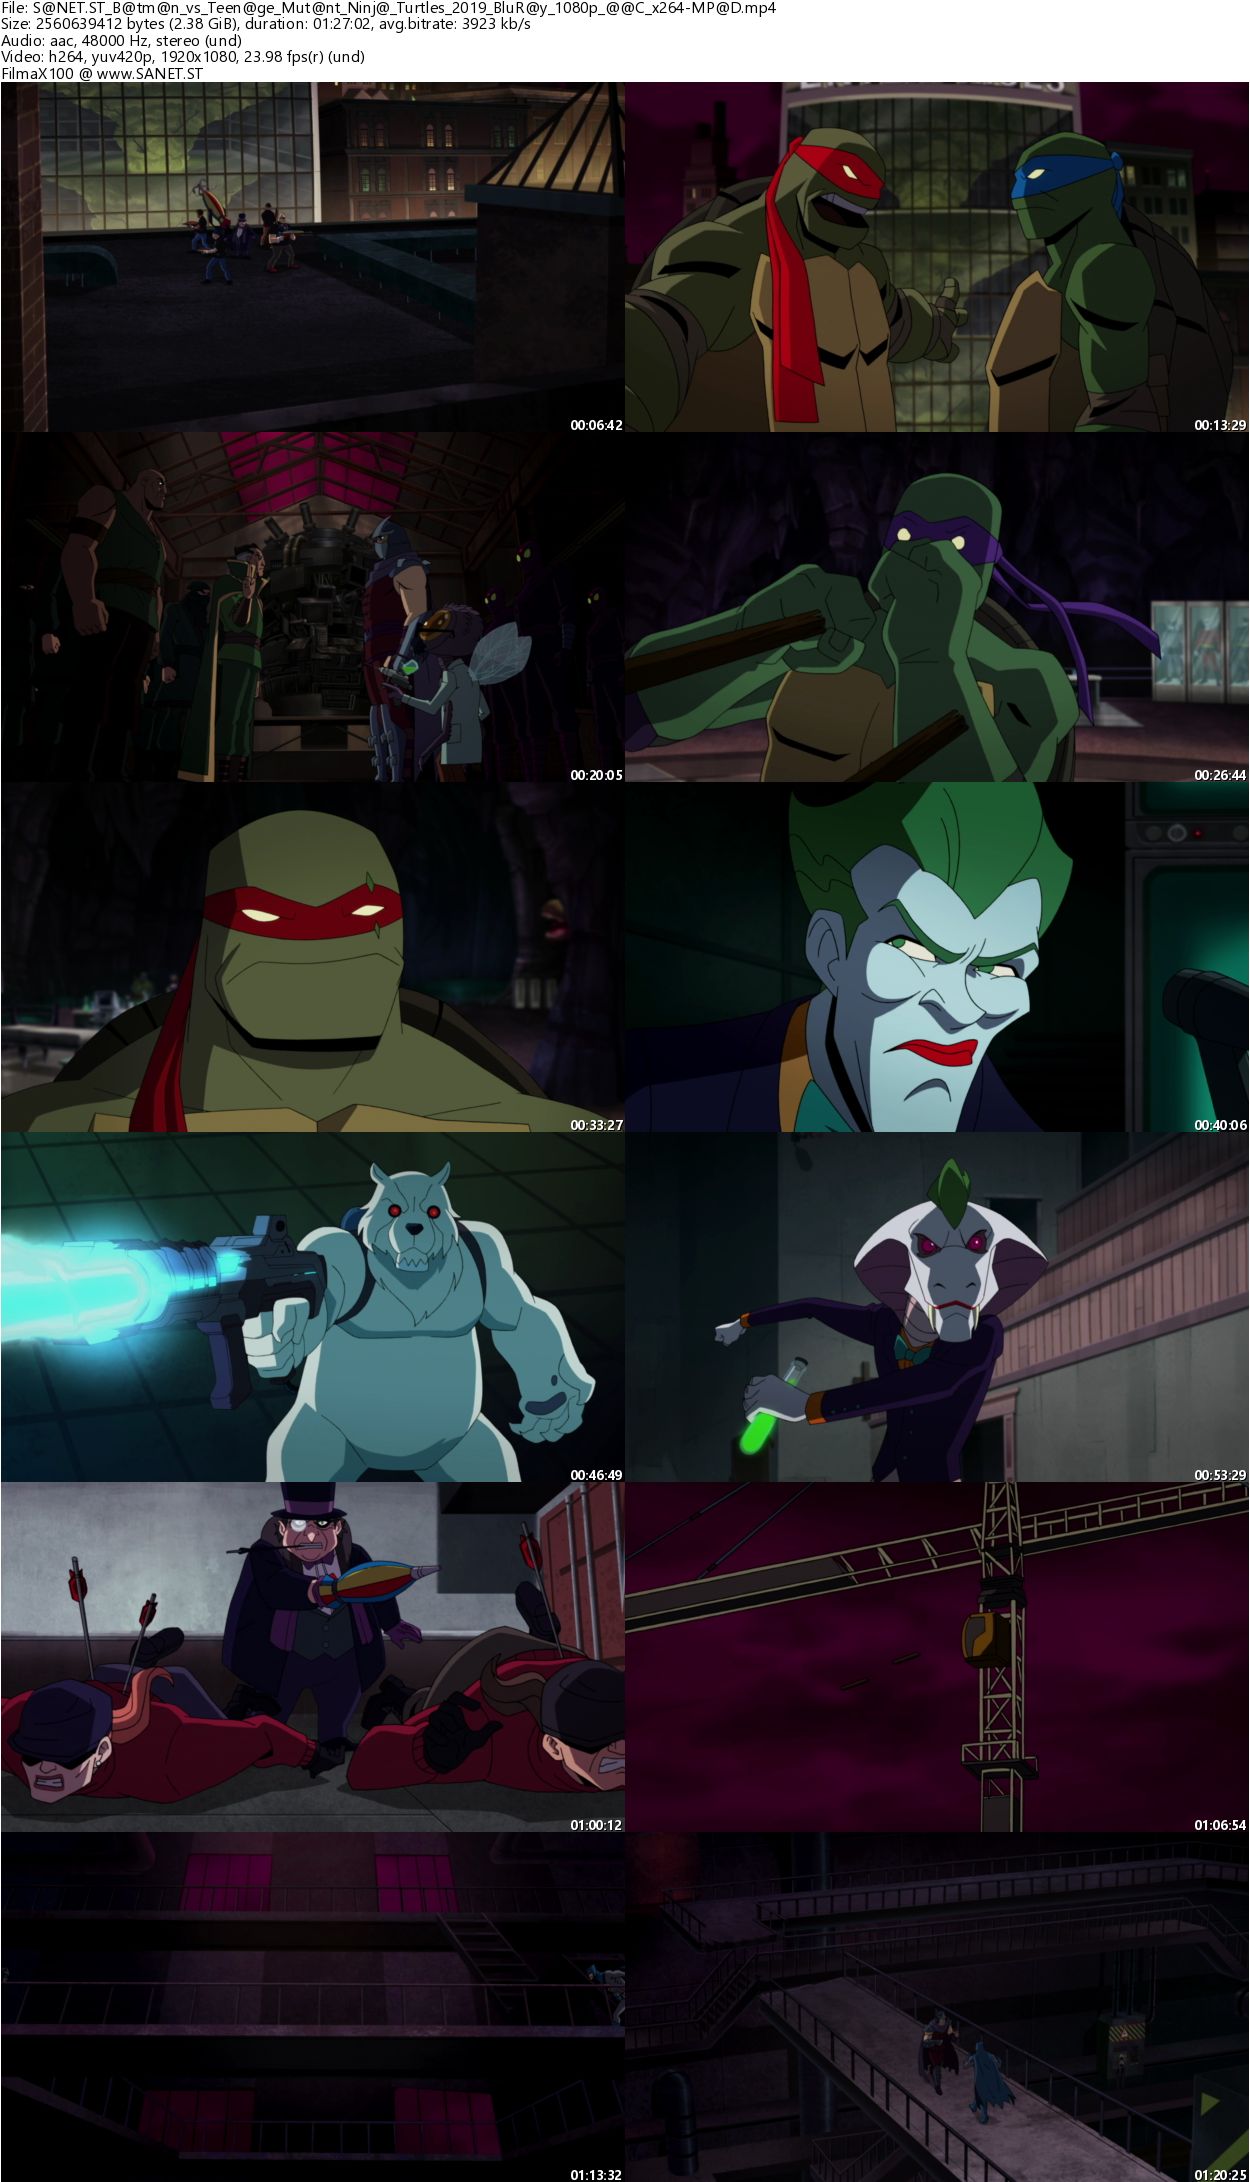 2019 Batman Vs. Teenage Mutant Ninja Turtles